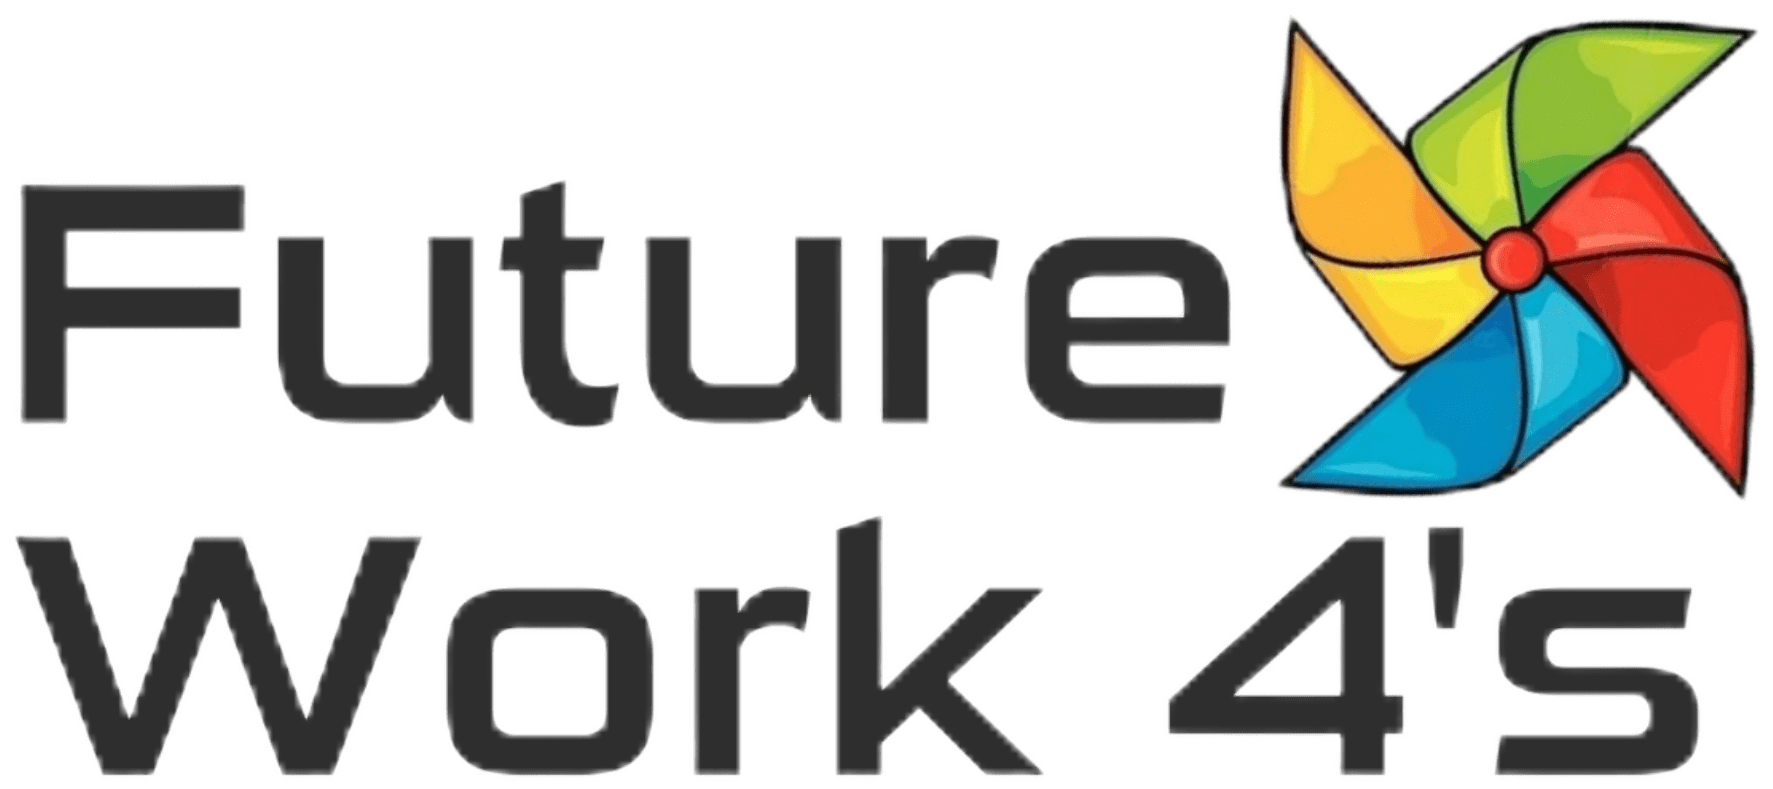 futurework4s